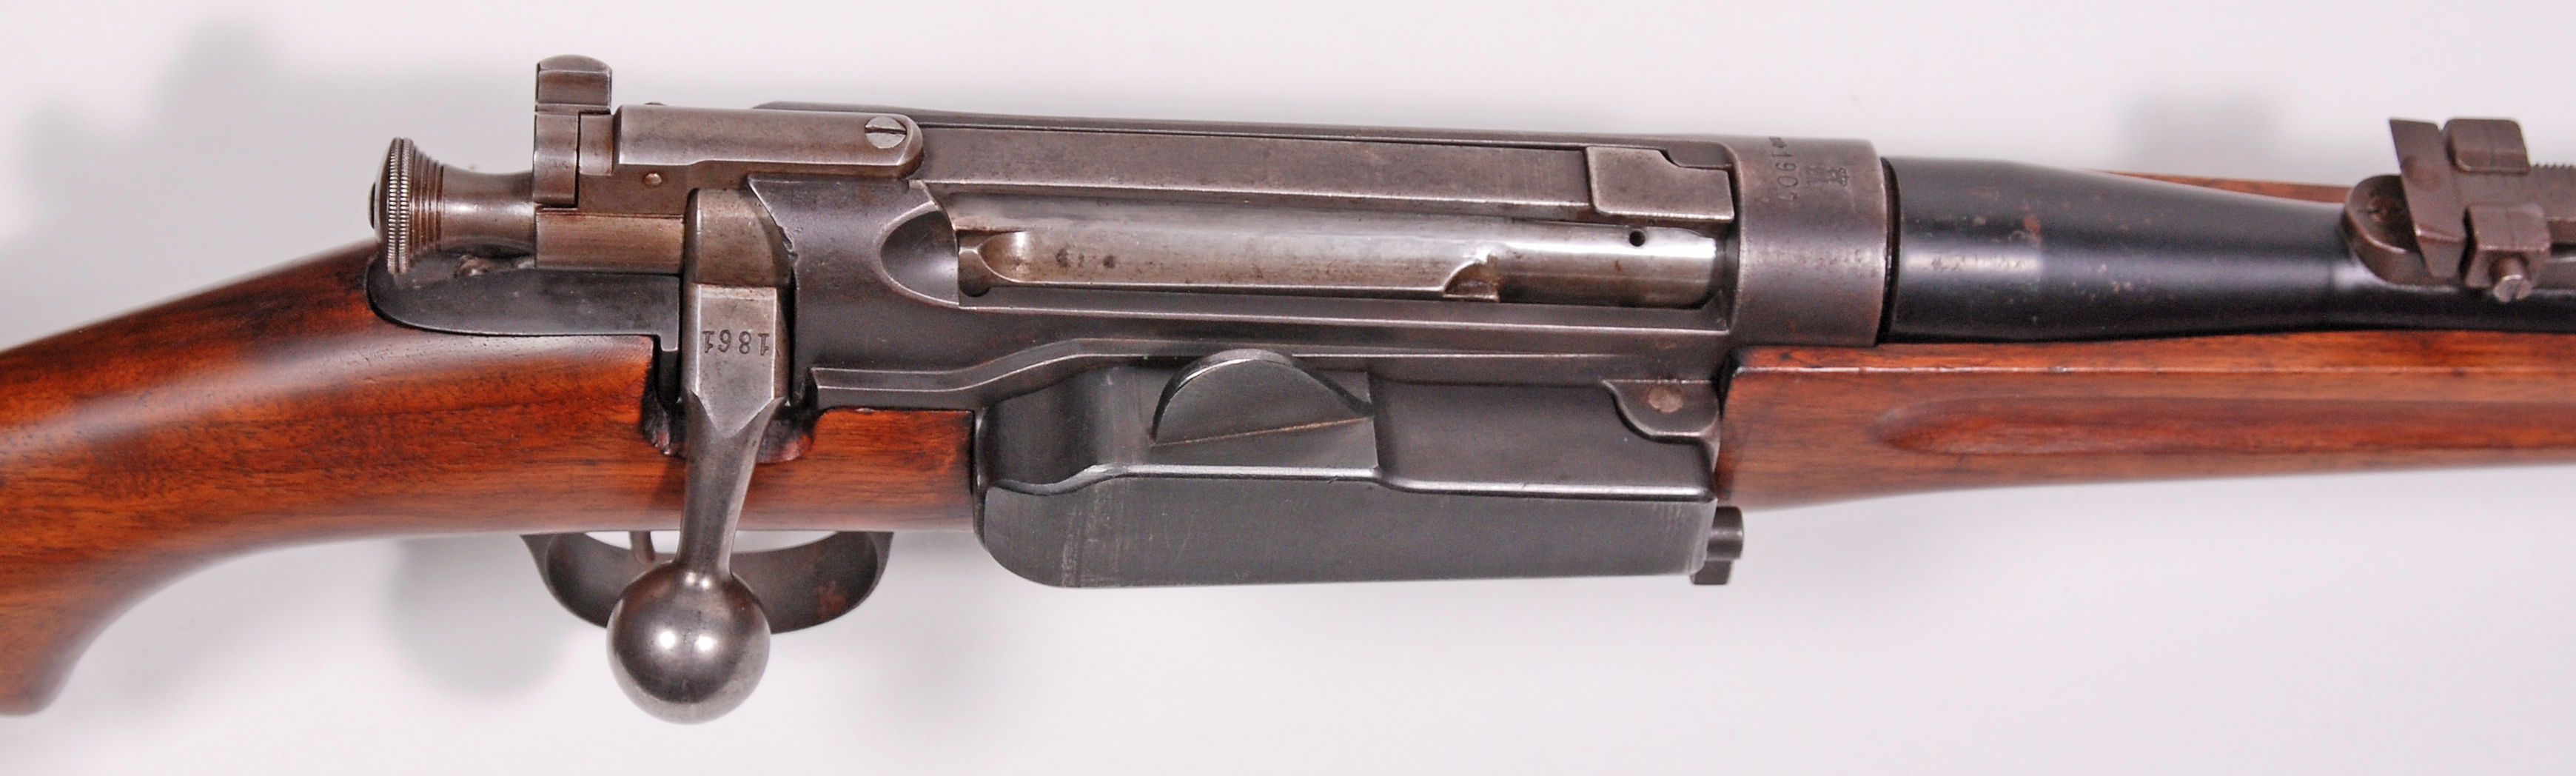 ./guns/rifle/bilder/Rifle-Kongsberg-Krag-M1906-1449-3.jpg